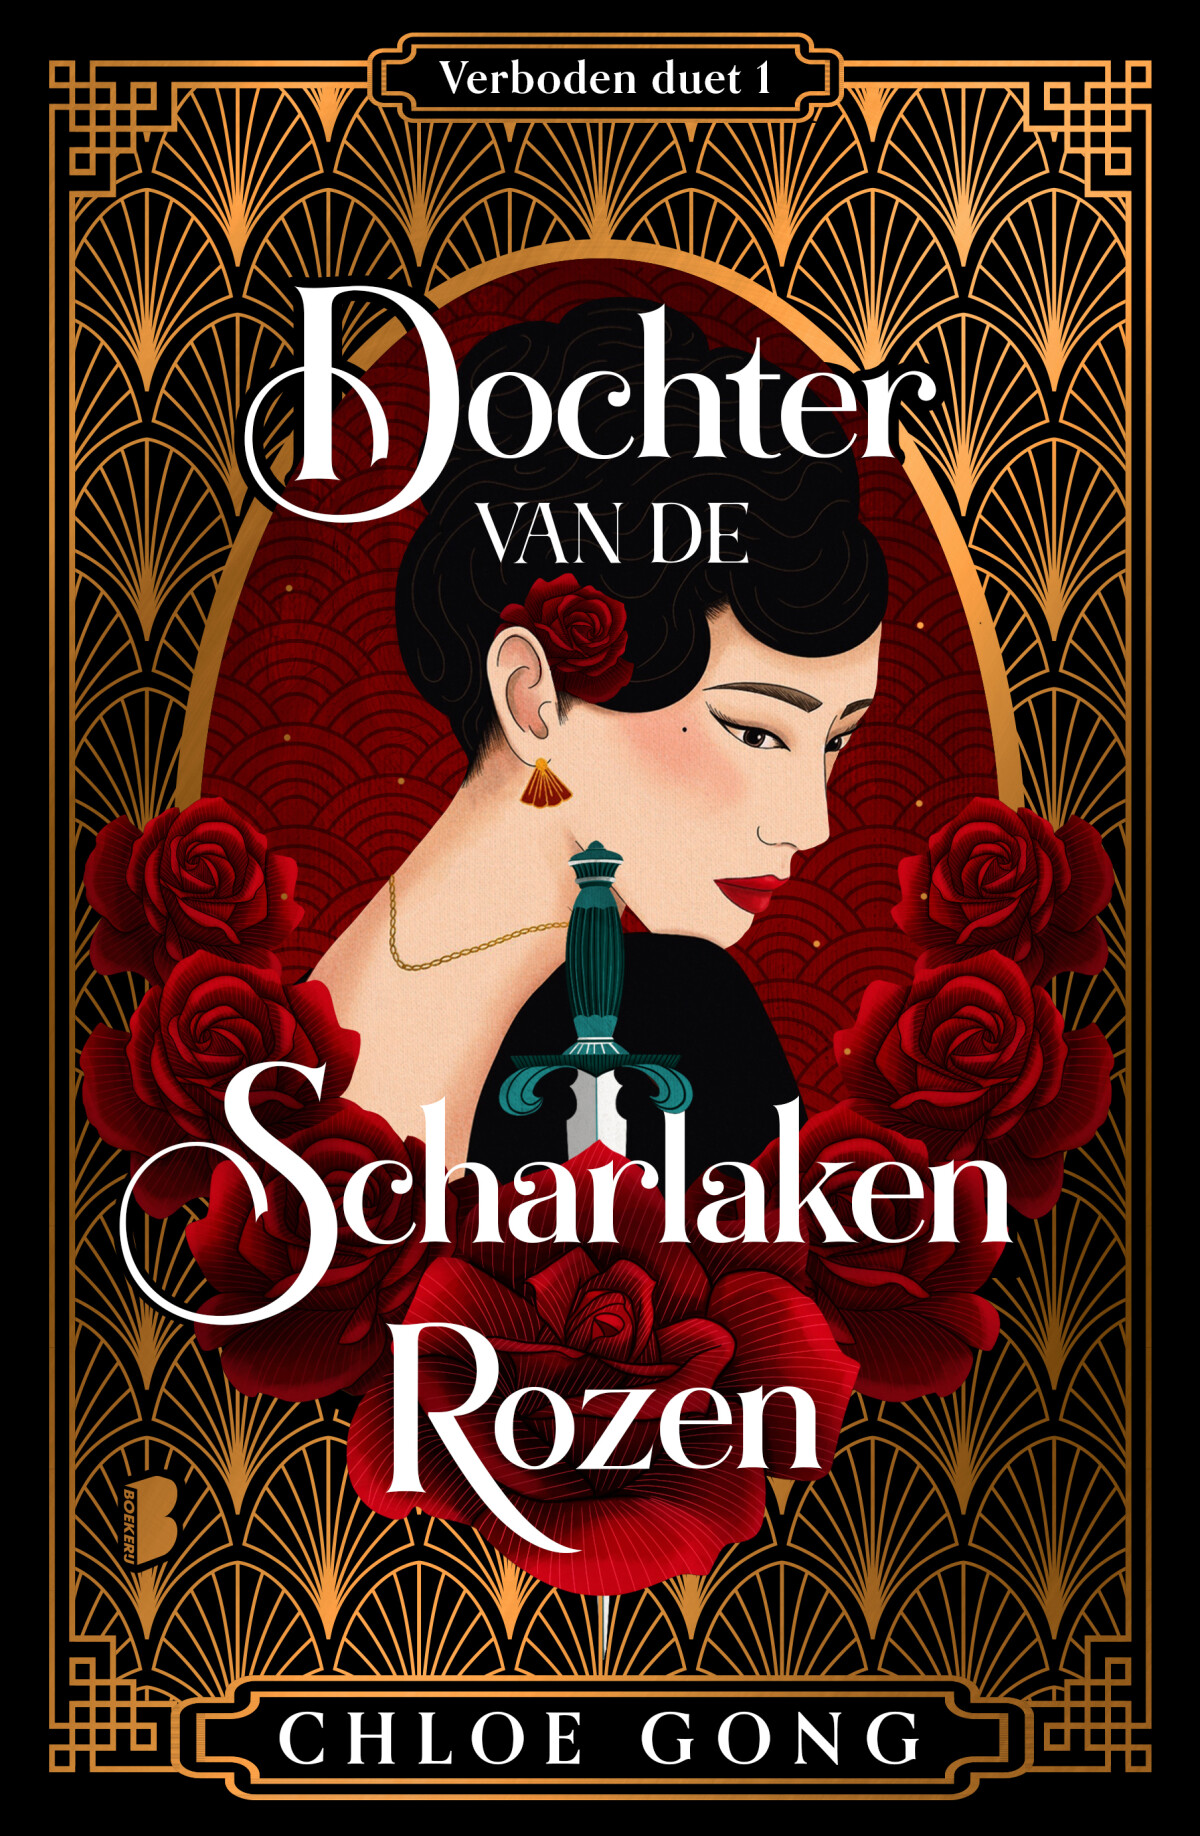 Dochter van de Scharlaken Rozen Ltd.edition